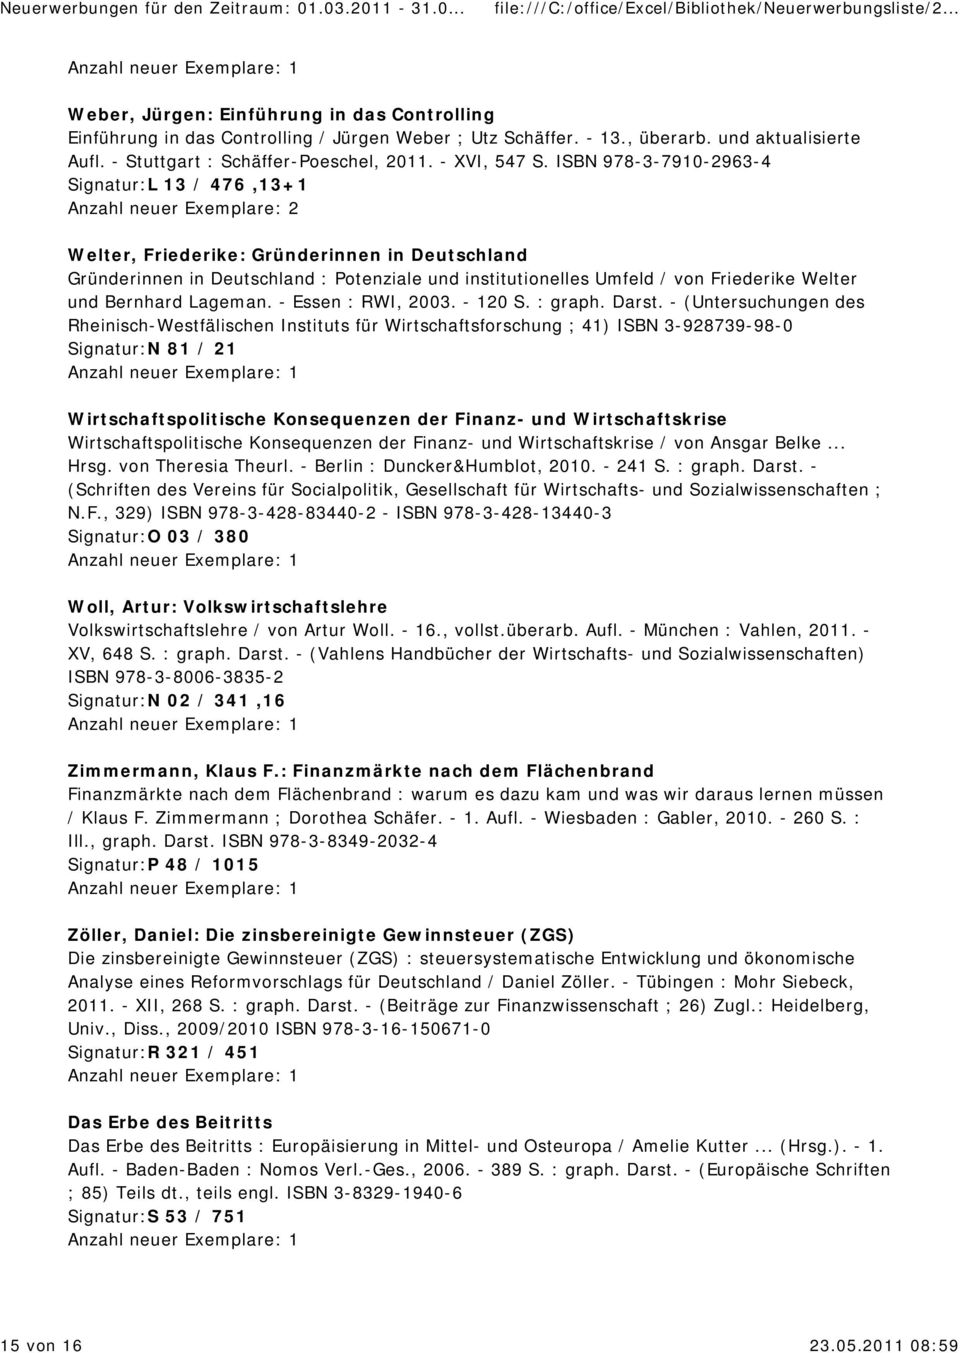 ISBN 978-3-7910-2963-4 Signatur:L 13 / 476,13+1 Anzahl neuer Exemplare: 2 Welter, Friederike: Gründerinnen in Deutschland Gründerinnen in Deutschland : Potenziale und institutionelles Umfeld / von